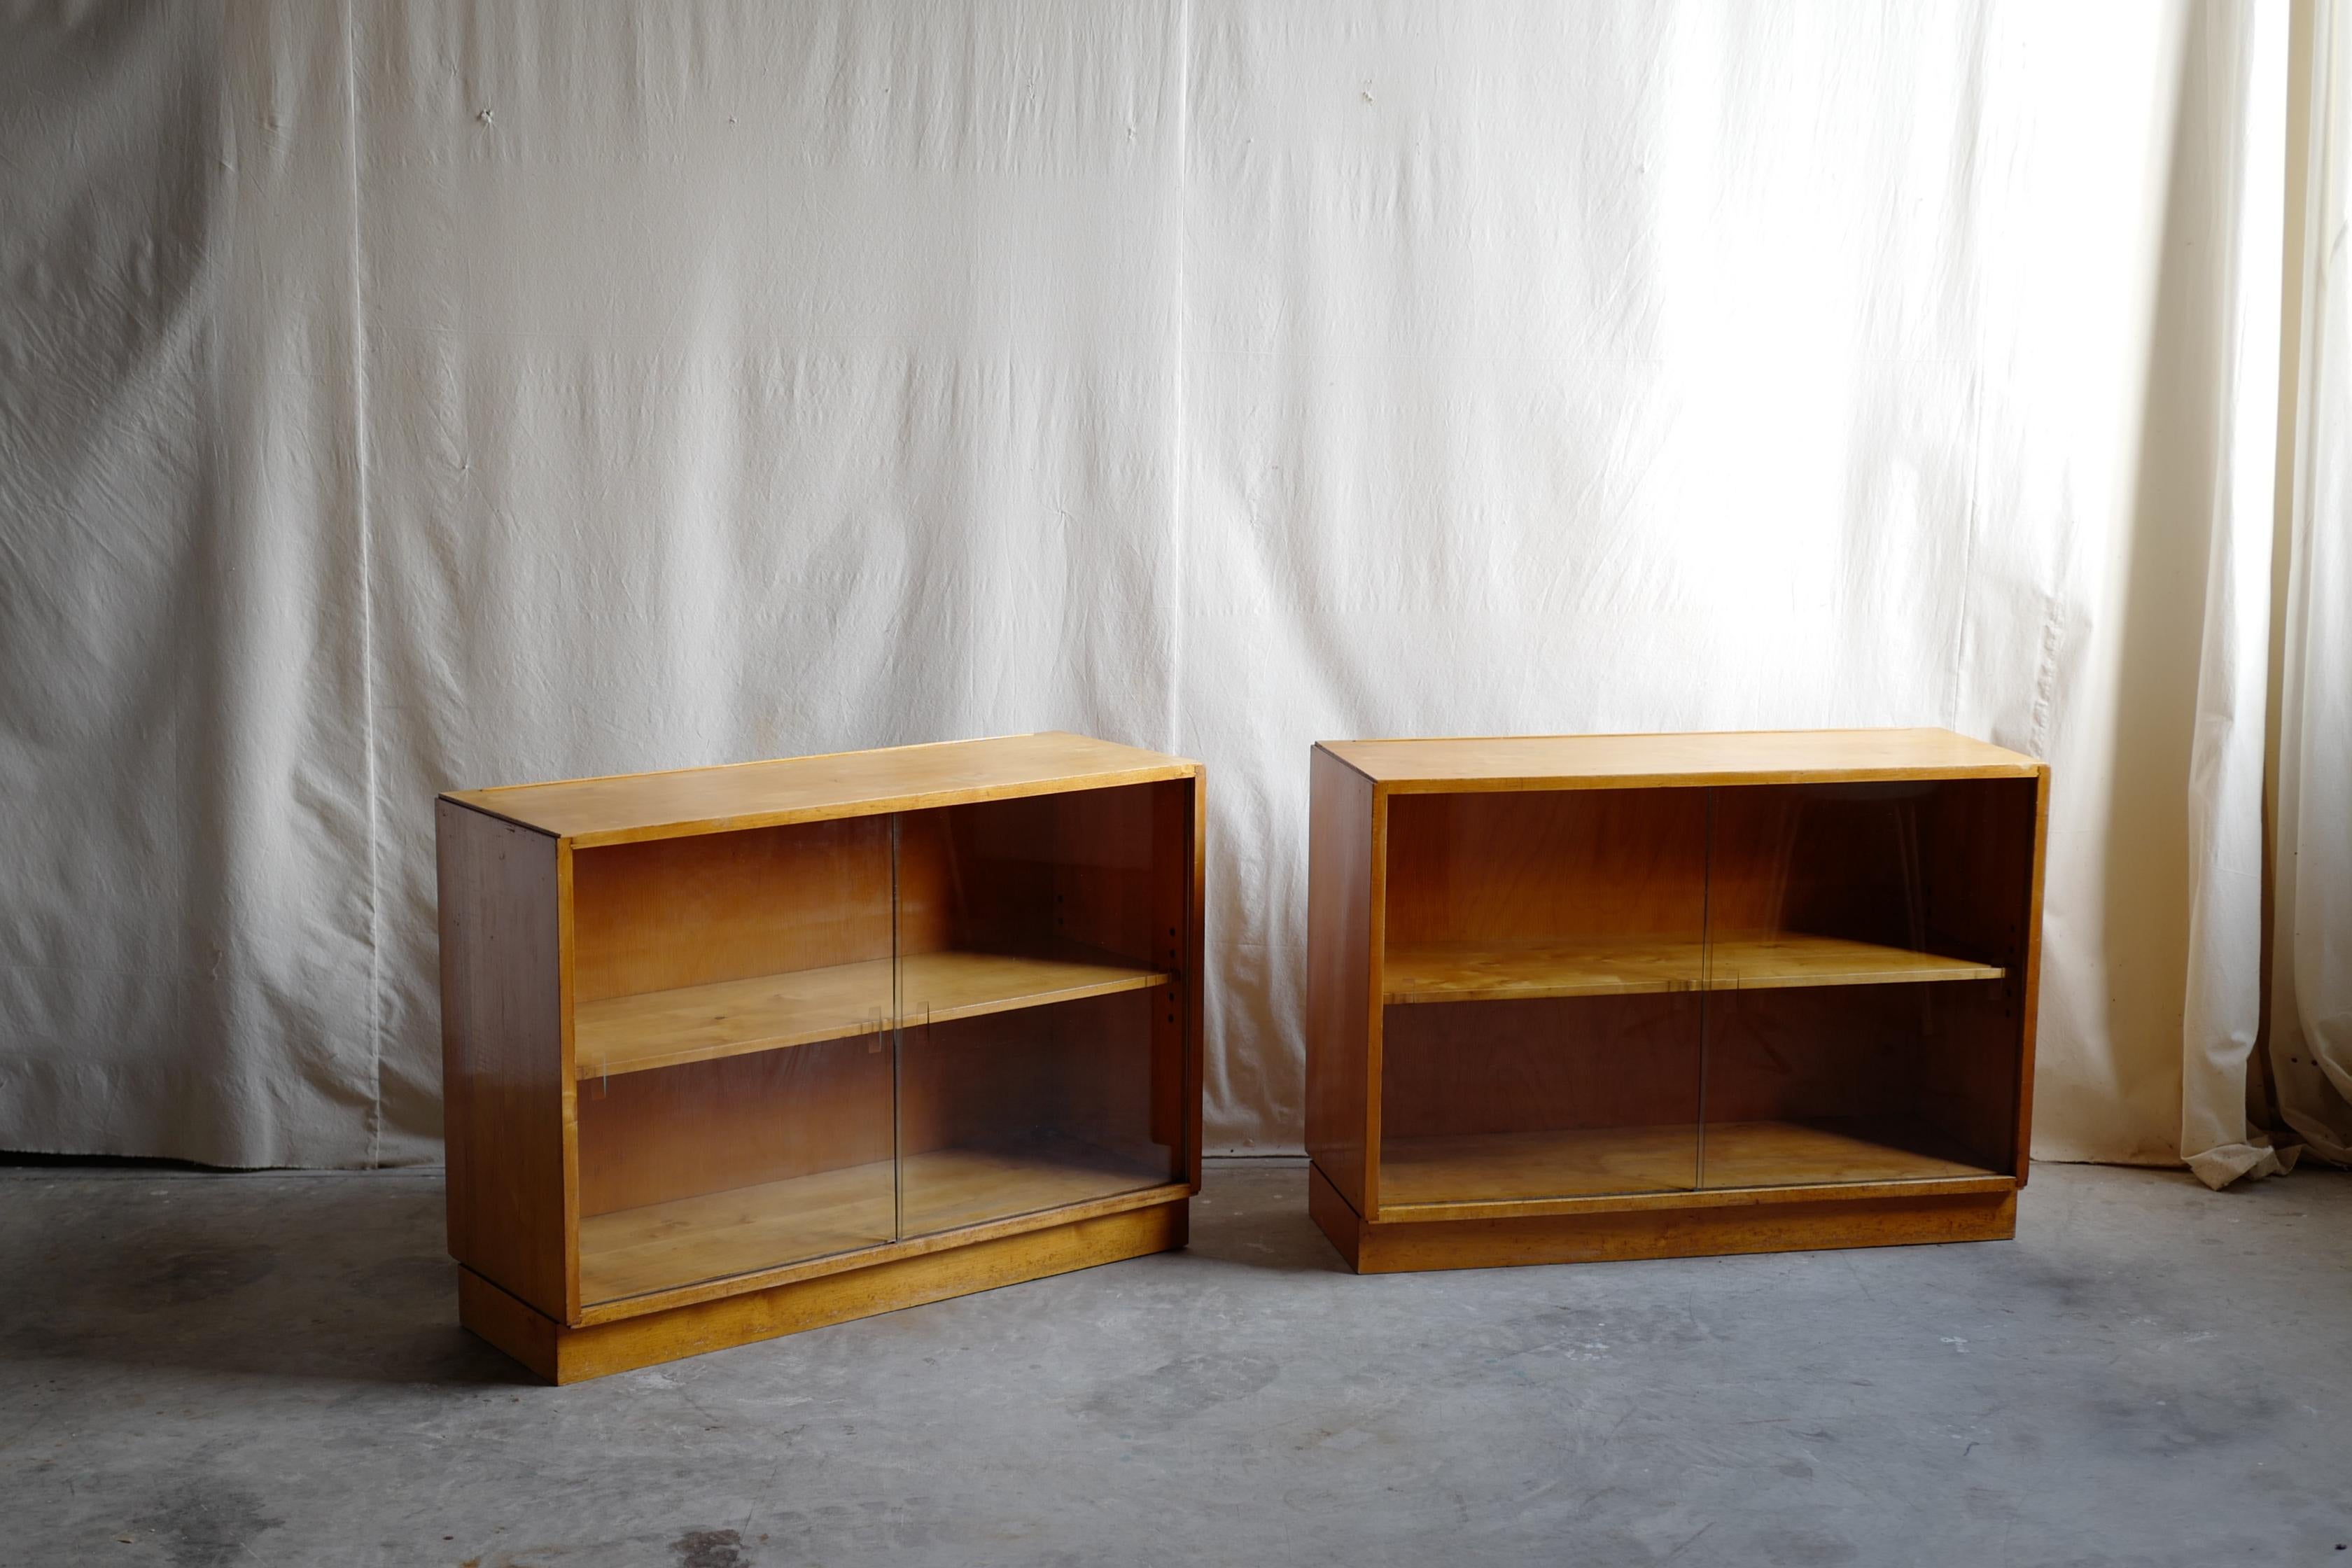 armoire à glace alvar & aino aalto design.
il s'agit des produits les plus anciens d'aalto furniture.
alvar & aino tentent de vendre leurs meubles au Royaume-Uni sous le nom de Finmar.
Il s'agit donc de l'état d'origine. 
Le modernisme a façonné